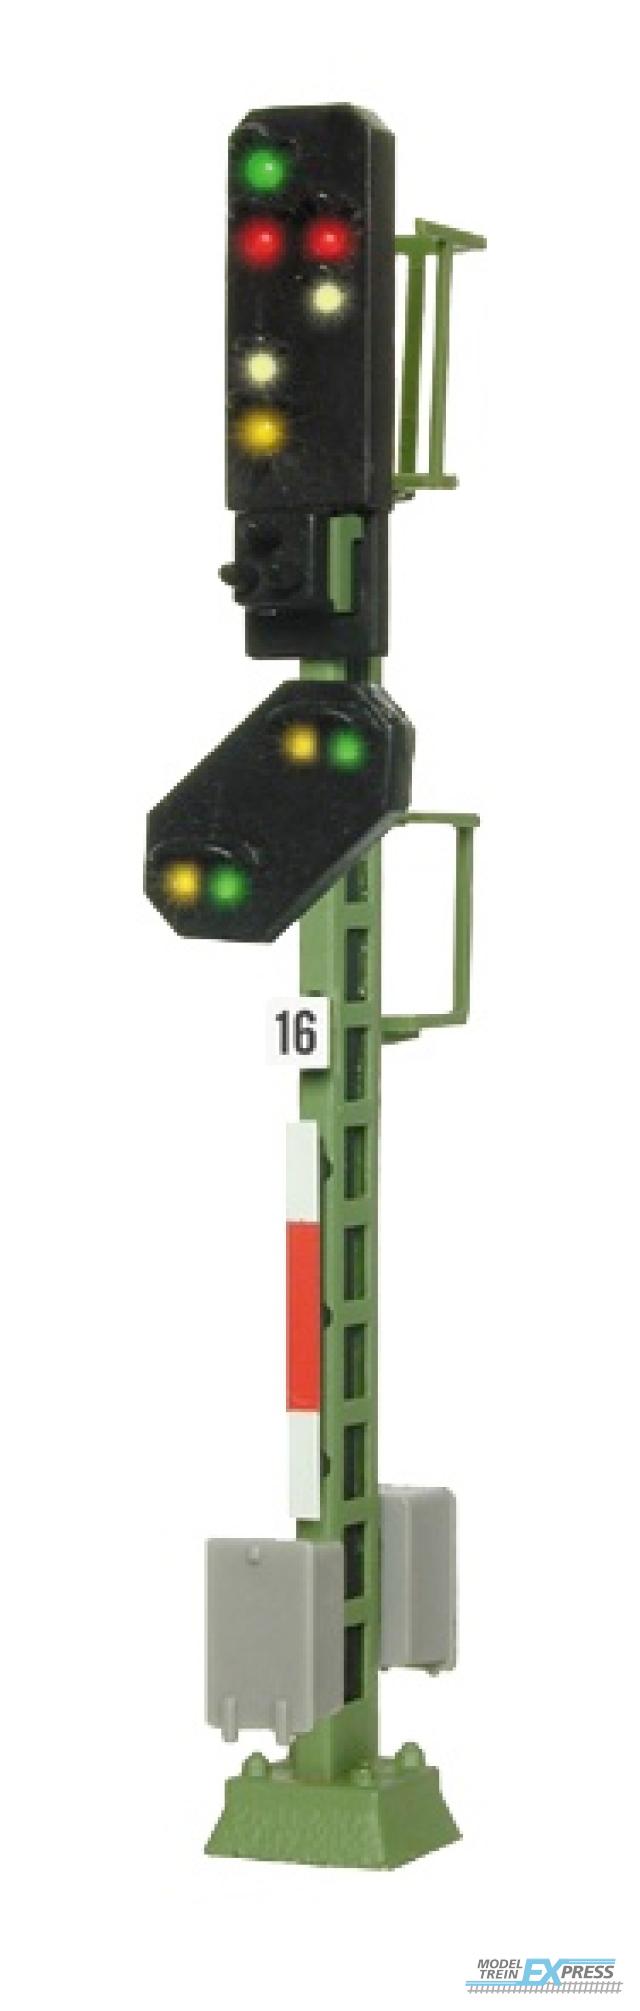 Viessmann 4416 N Licht-Ausfahrsignal mit Vorsignal